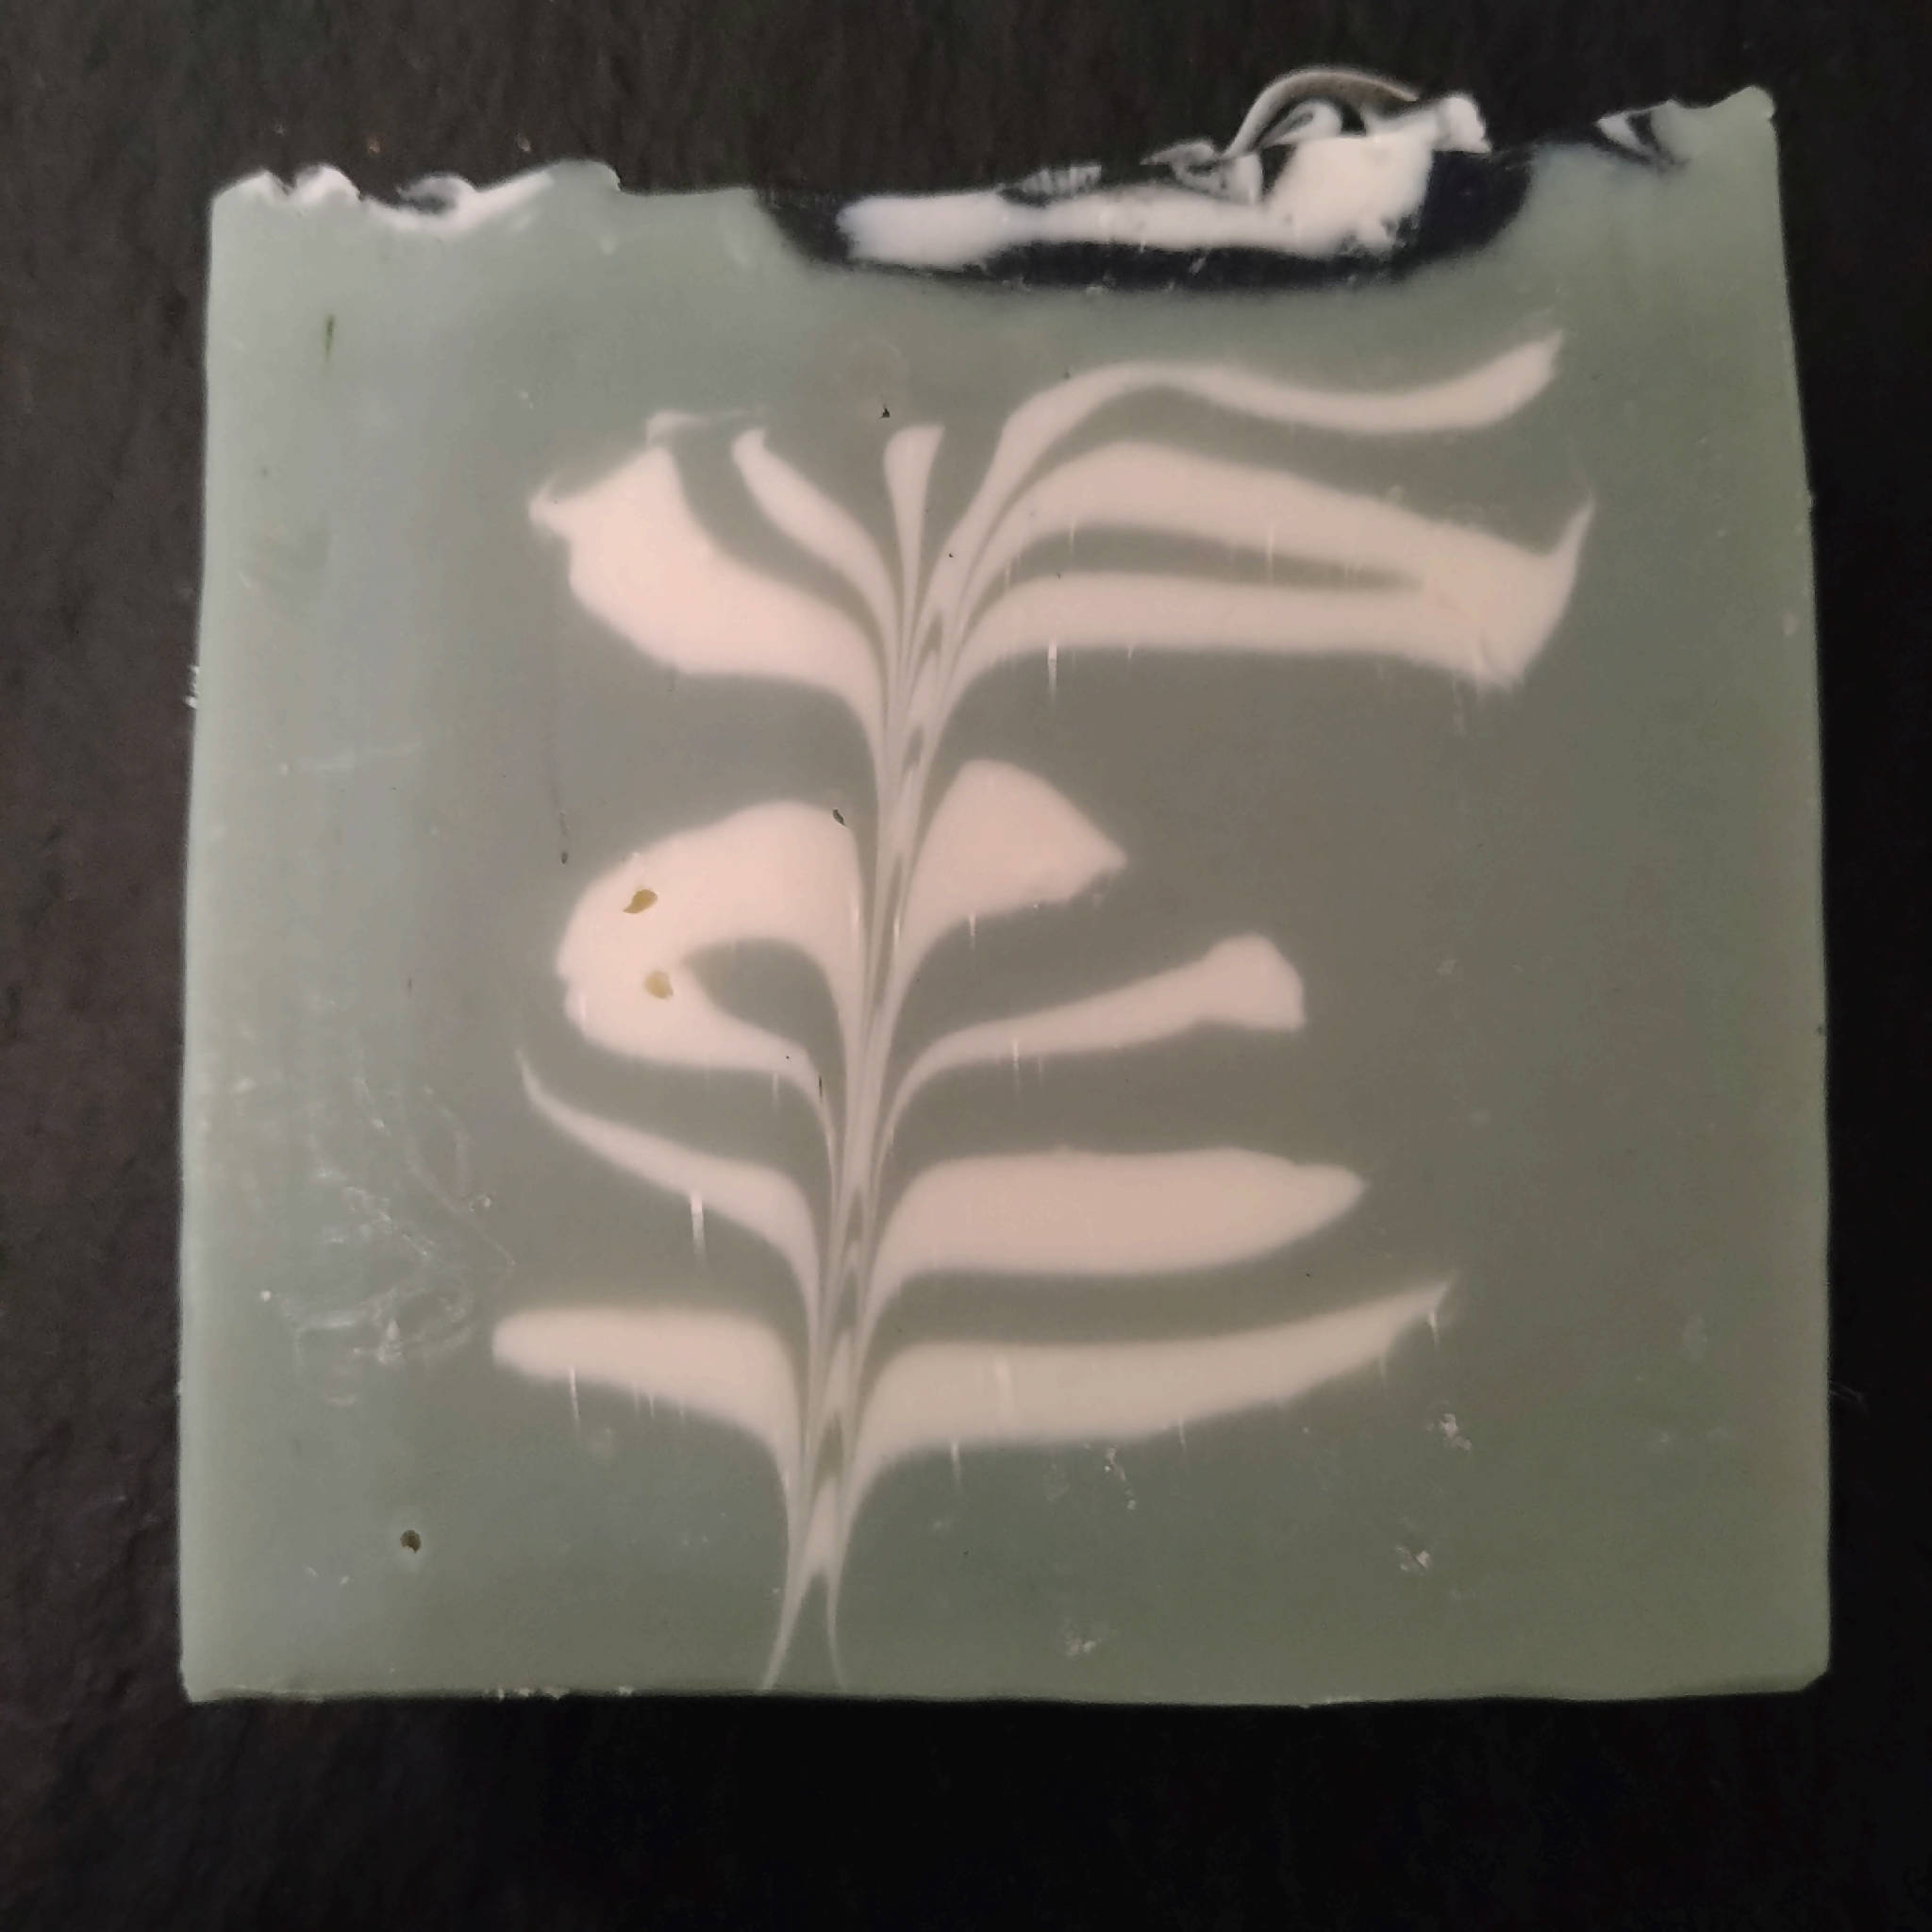 The Herb Garden soap